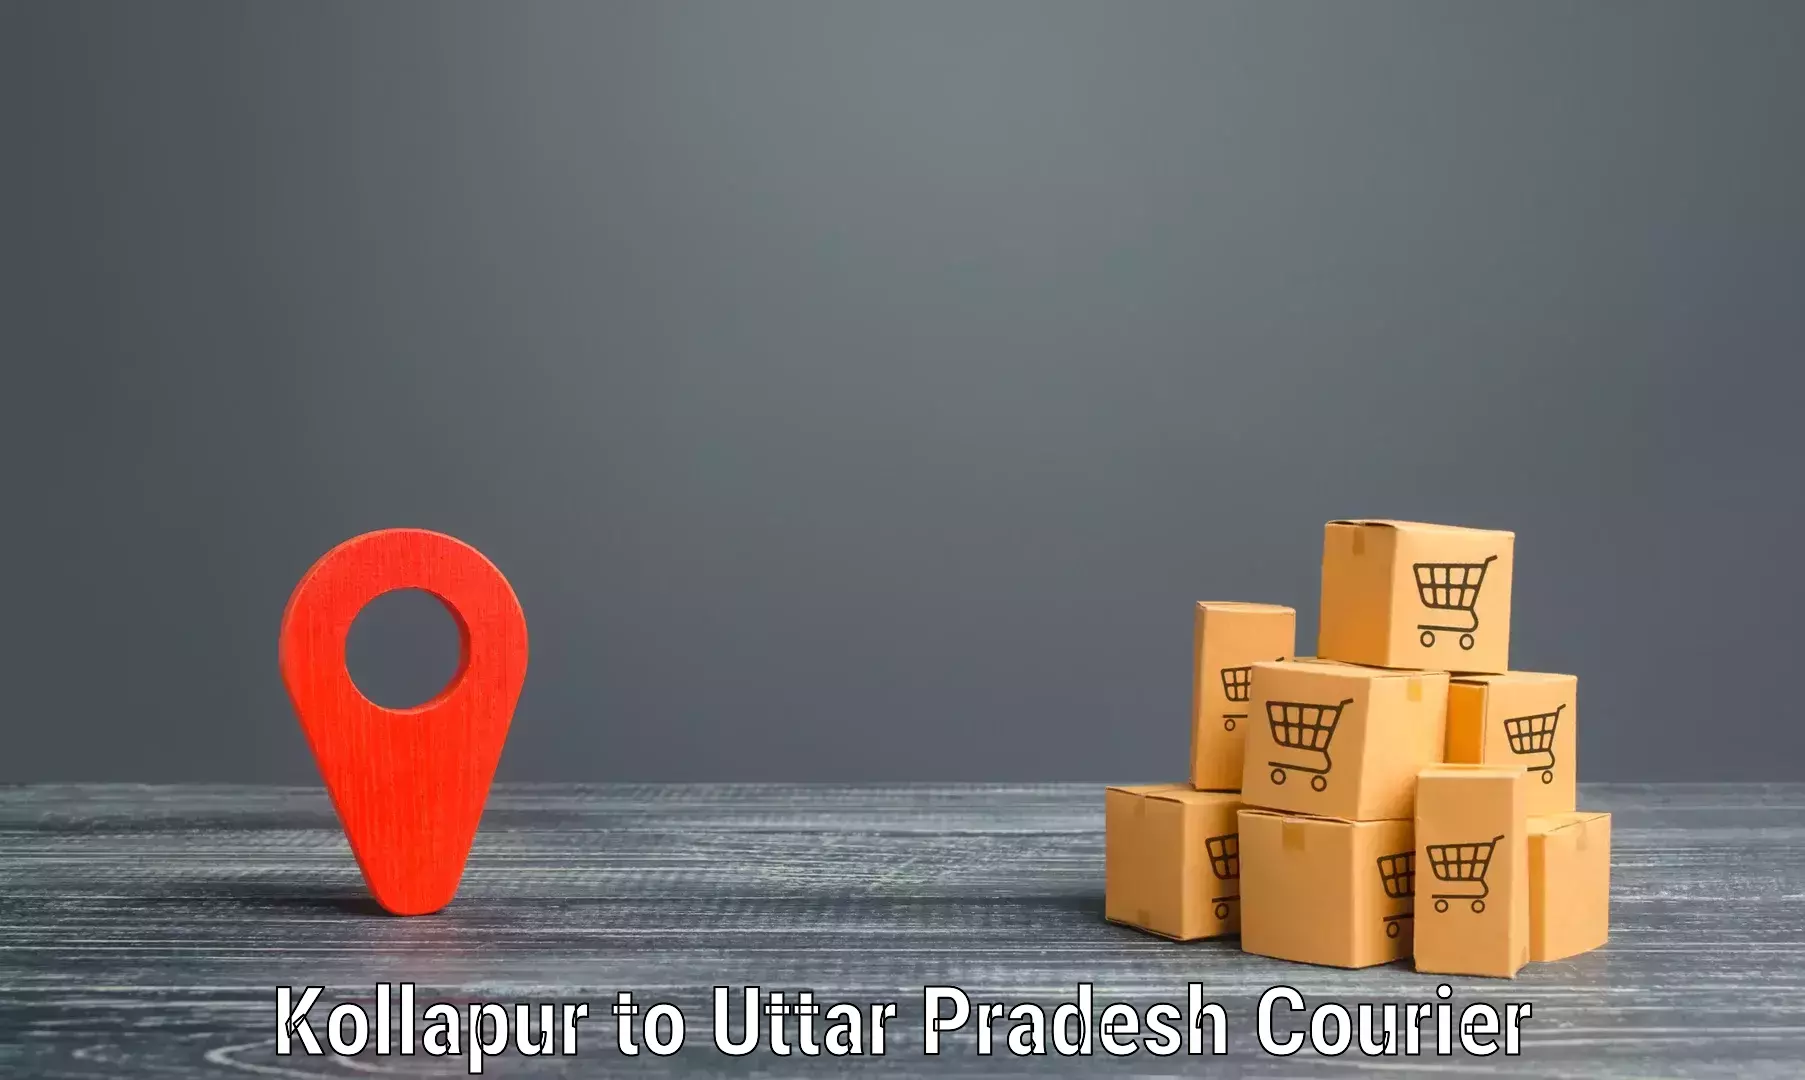 Efficient order fulfillment Kollapur to Shohratgarh